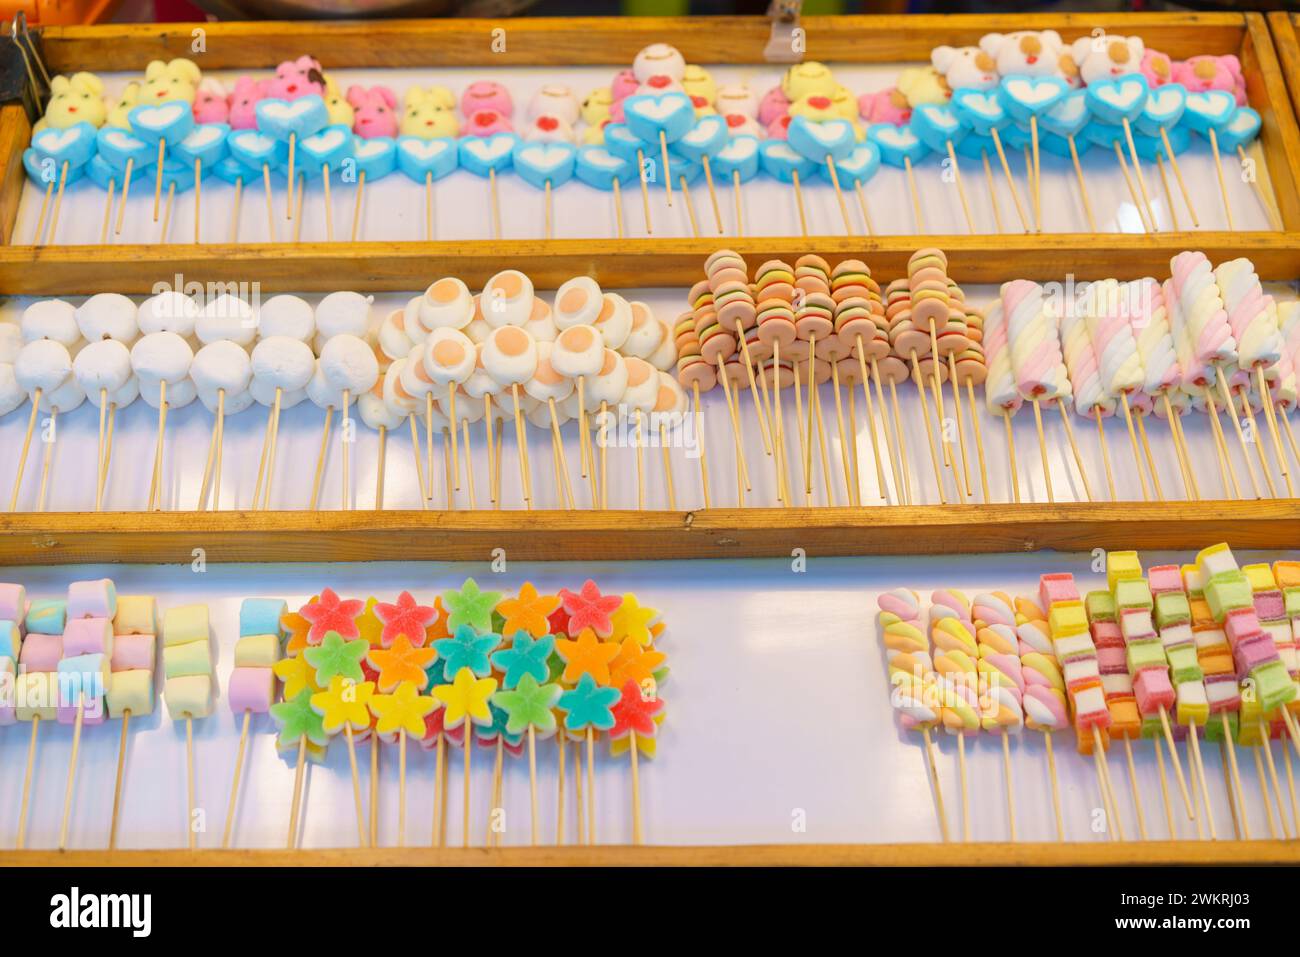 Una deliziosa selezione di coloratissimi spiedini di caramelle, tra cui marshmallow e caramelle in gelatina, esposti in un bancone del mercato in vendita Foto Stock